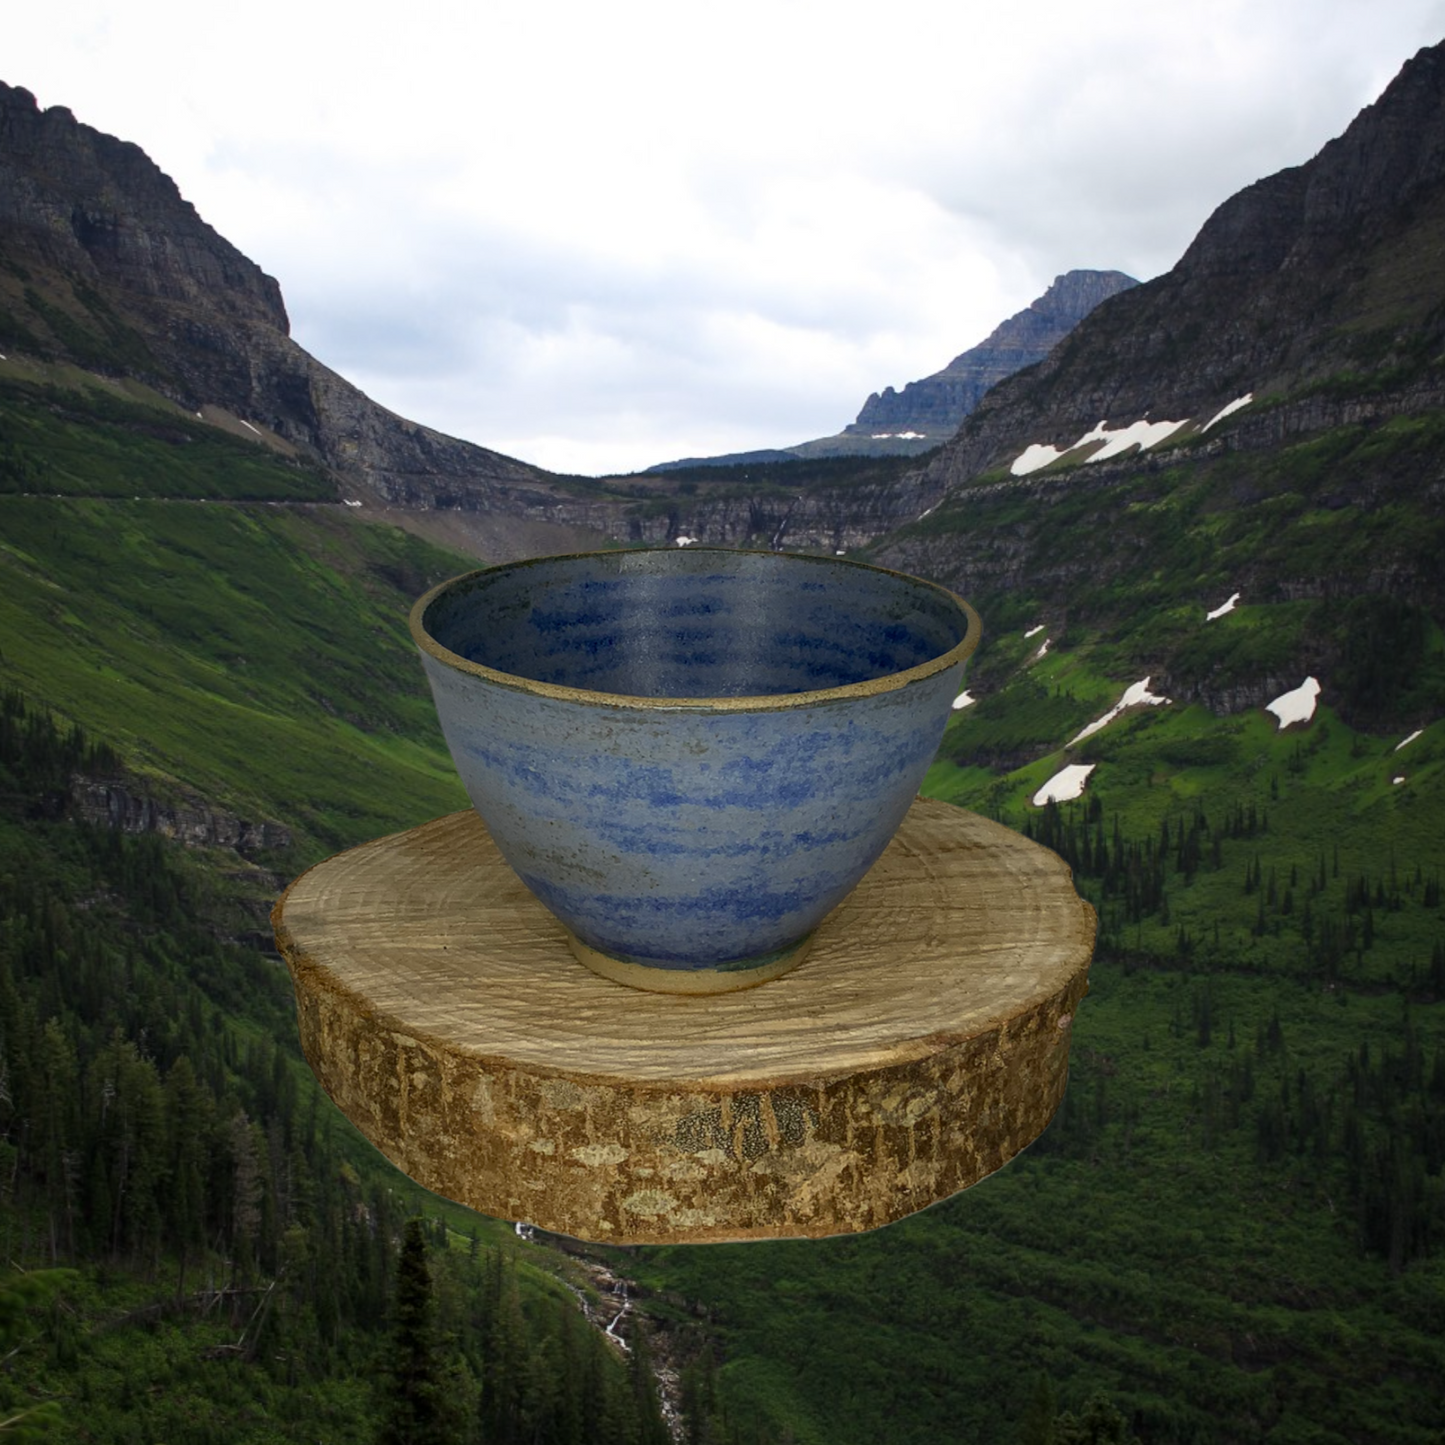 Earthenware bowls